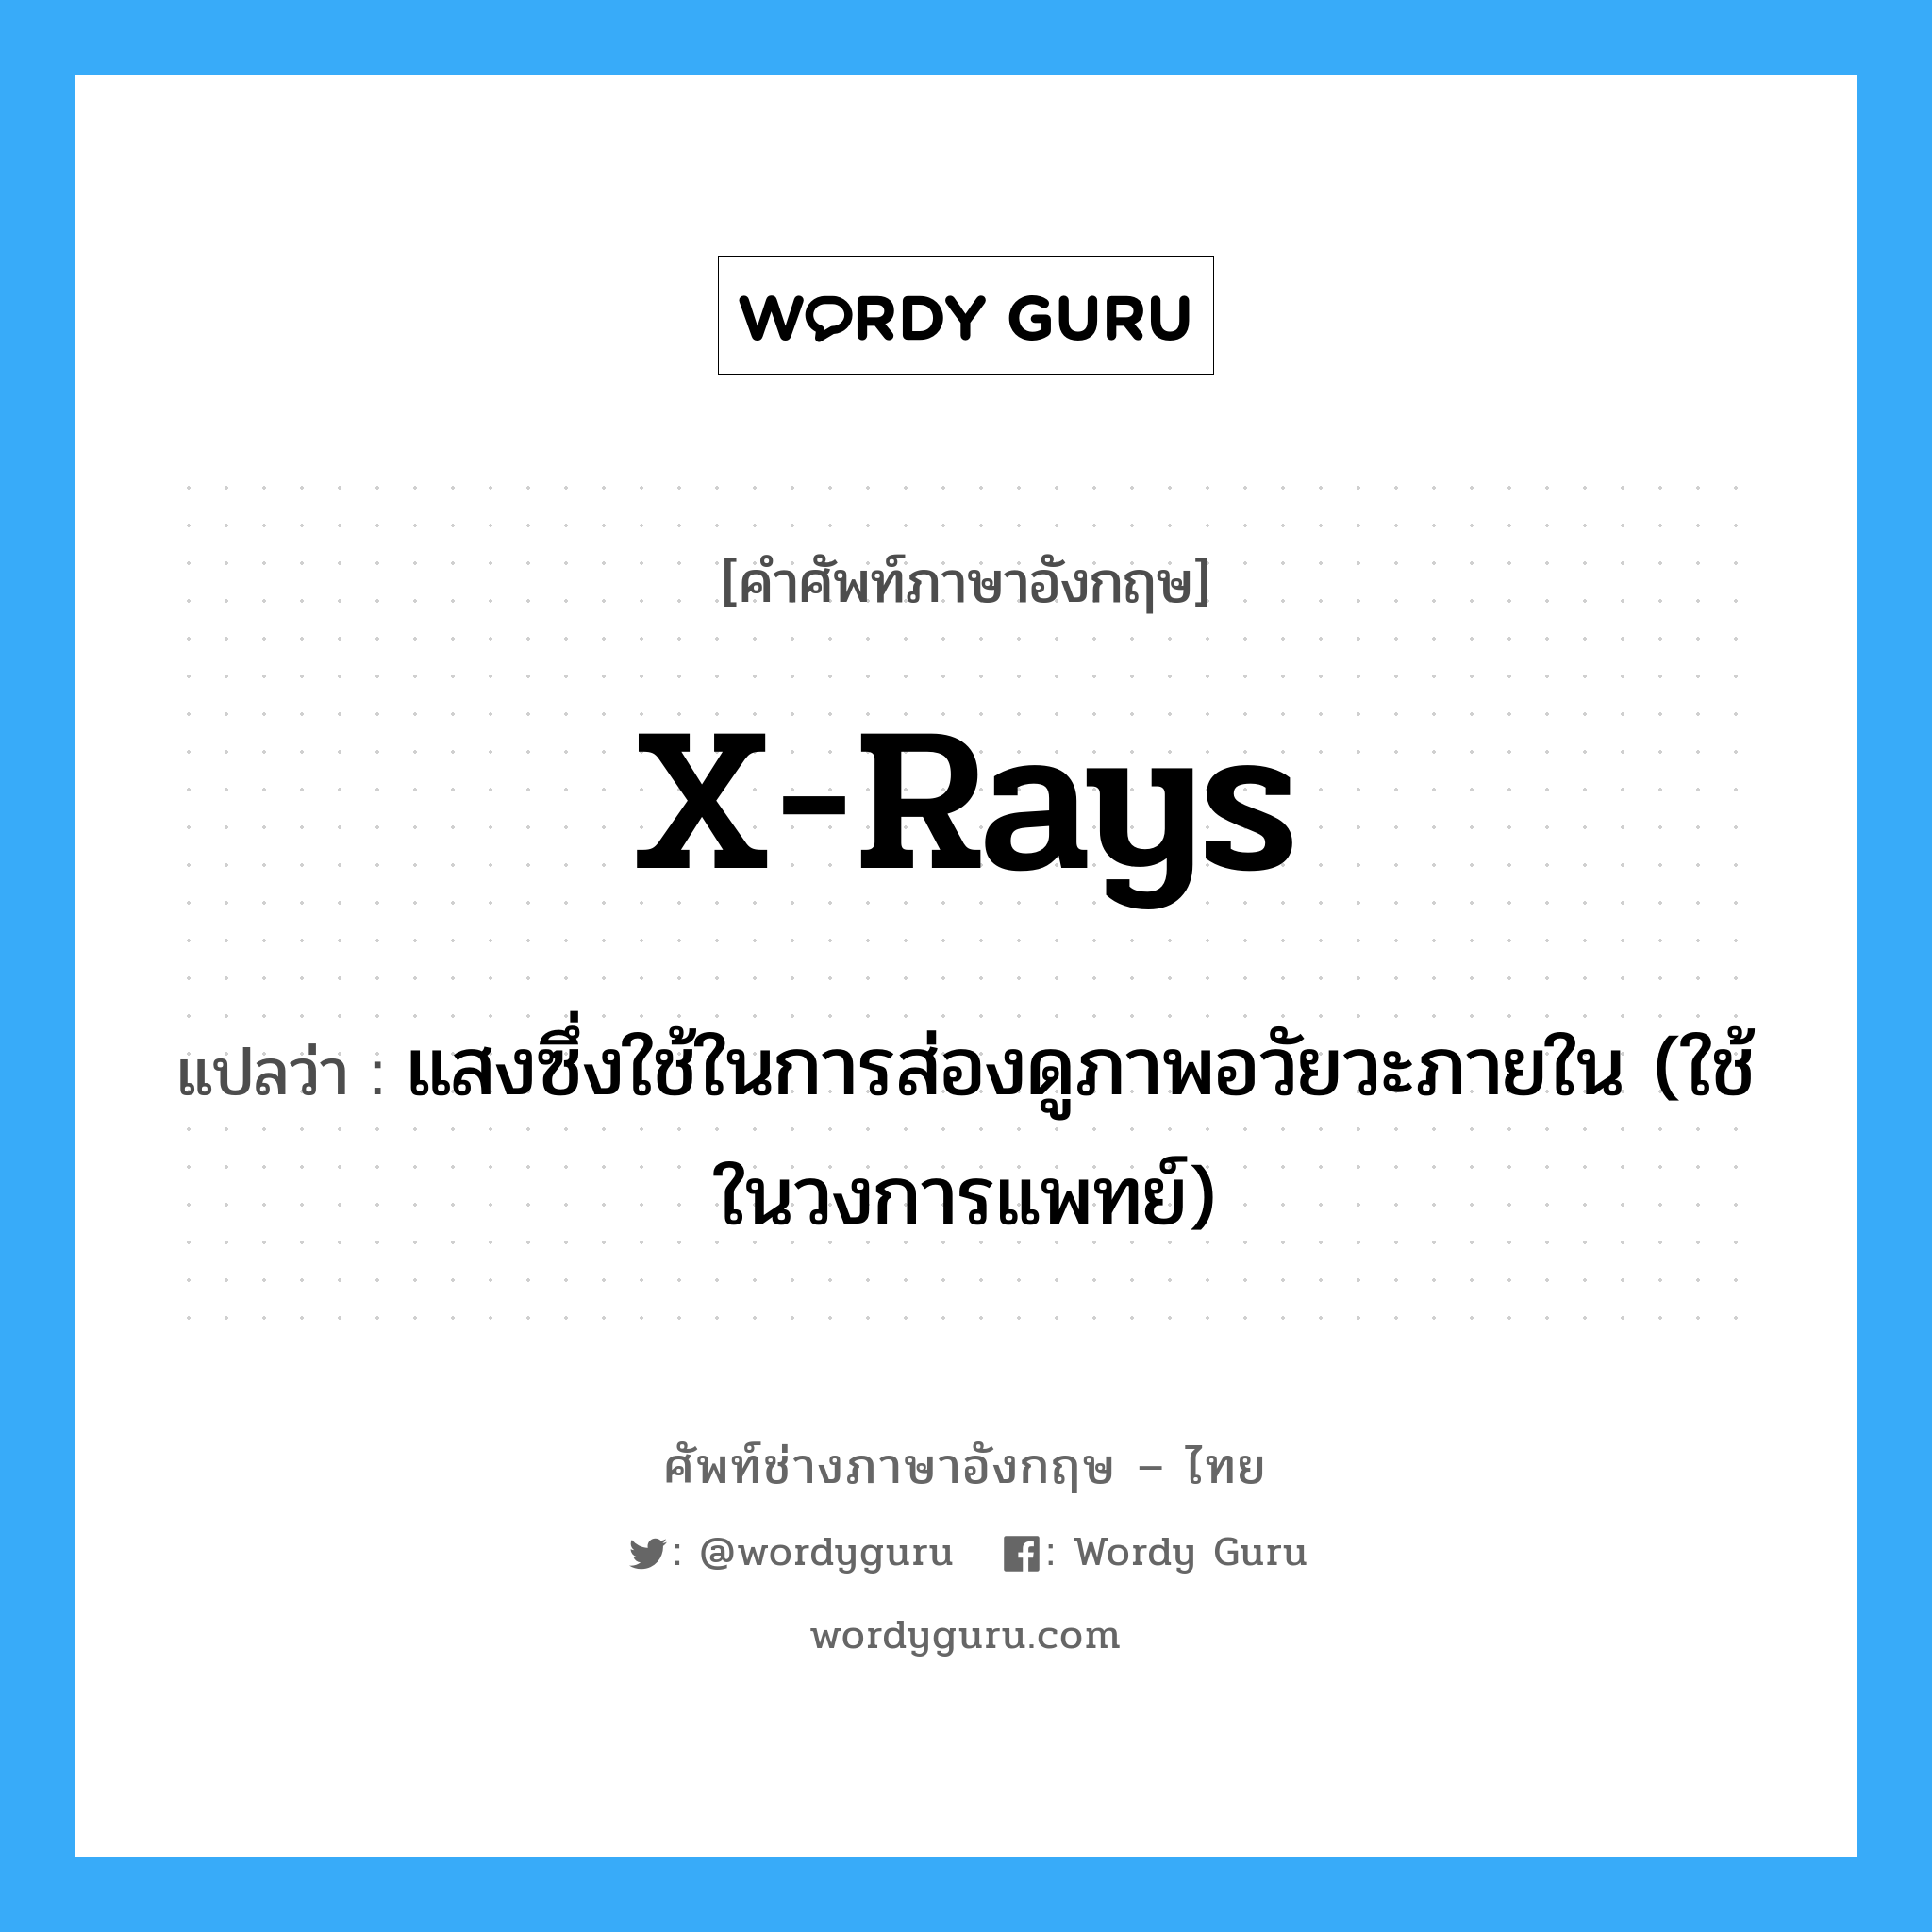 X-rays แปลว่า?, คำศัพท์ช่างภาษาอังกฤษ - ไทย X-rays คำศัพท์ภาษาอังกฤษ X-rays แปลว่า แสงซึ่งใช้ในการส่องดูภาพอวัยวะภายใน (ใช้ในวงการแพทย์)